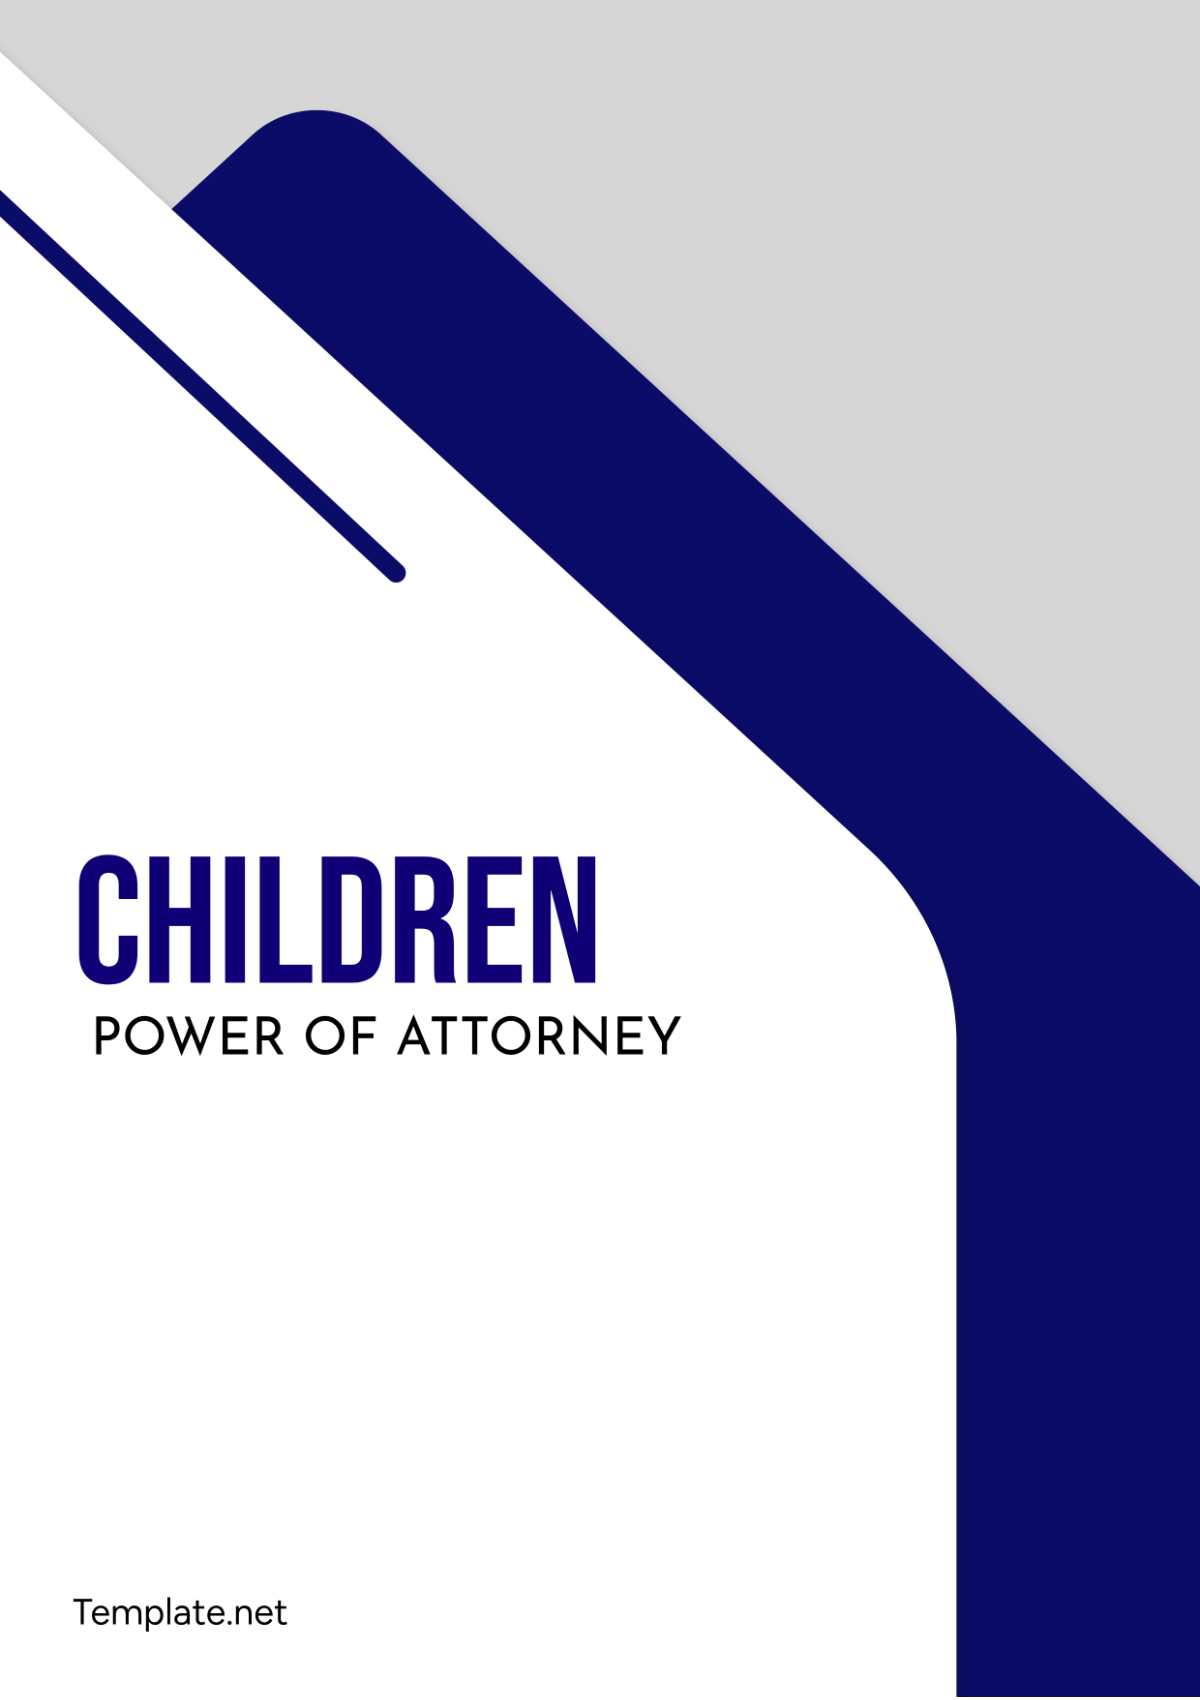 Children Power of Attorney Template